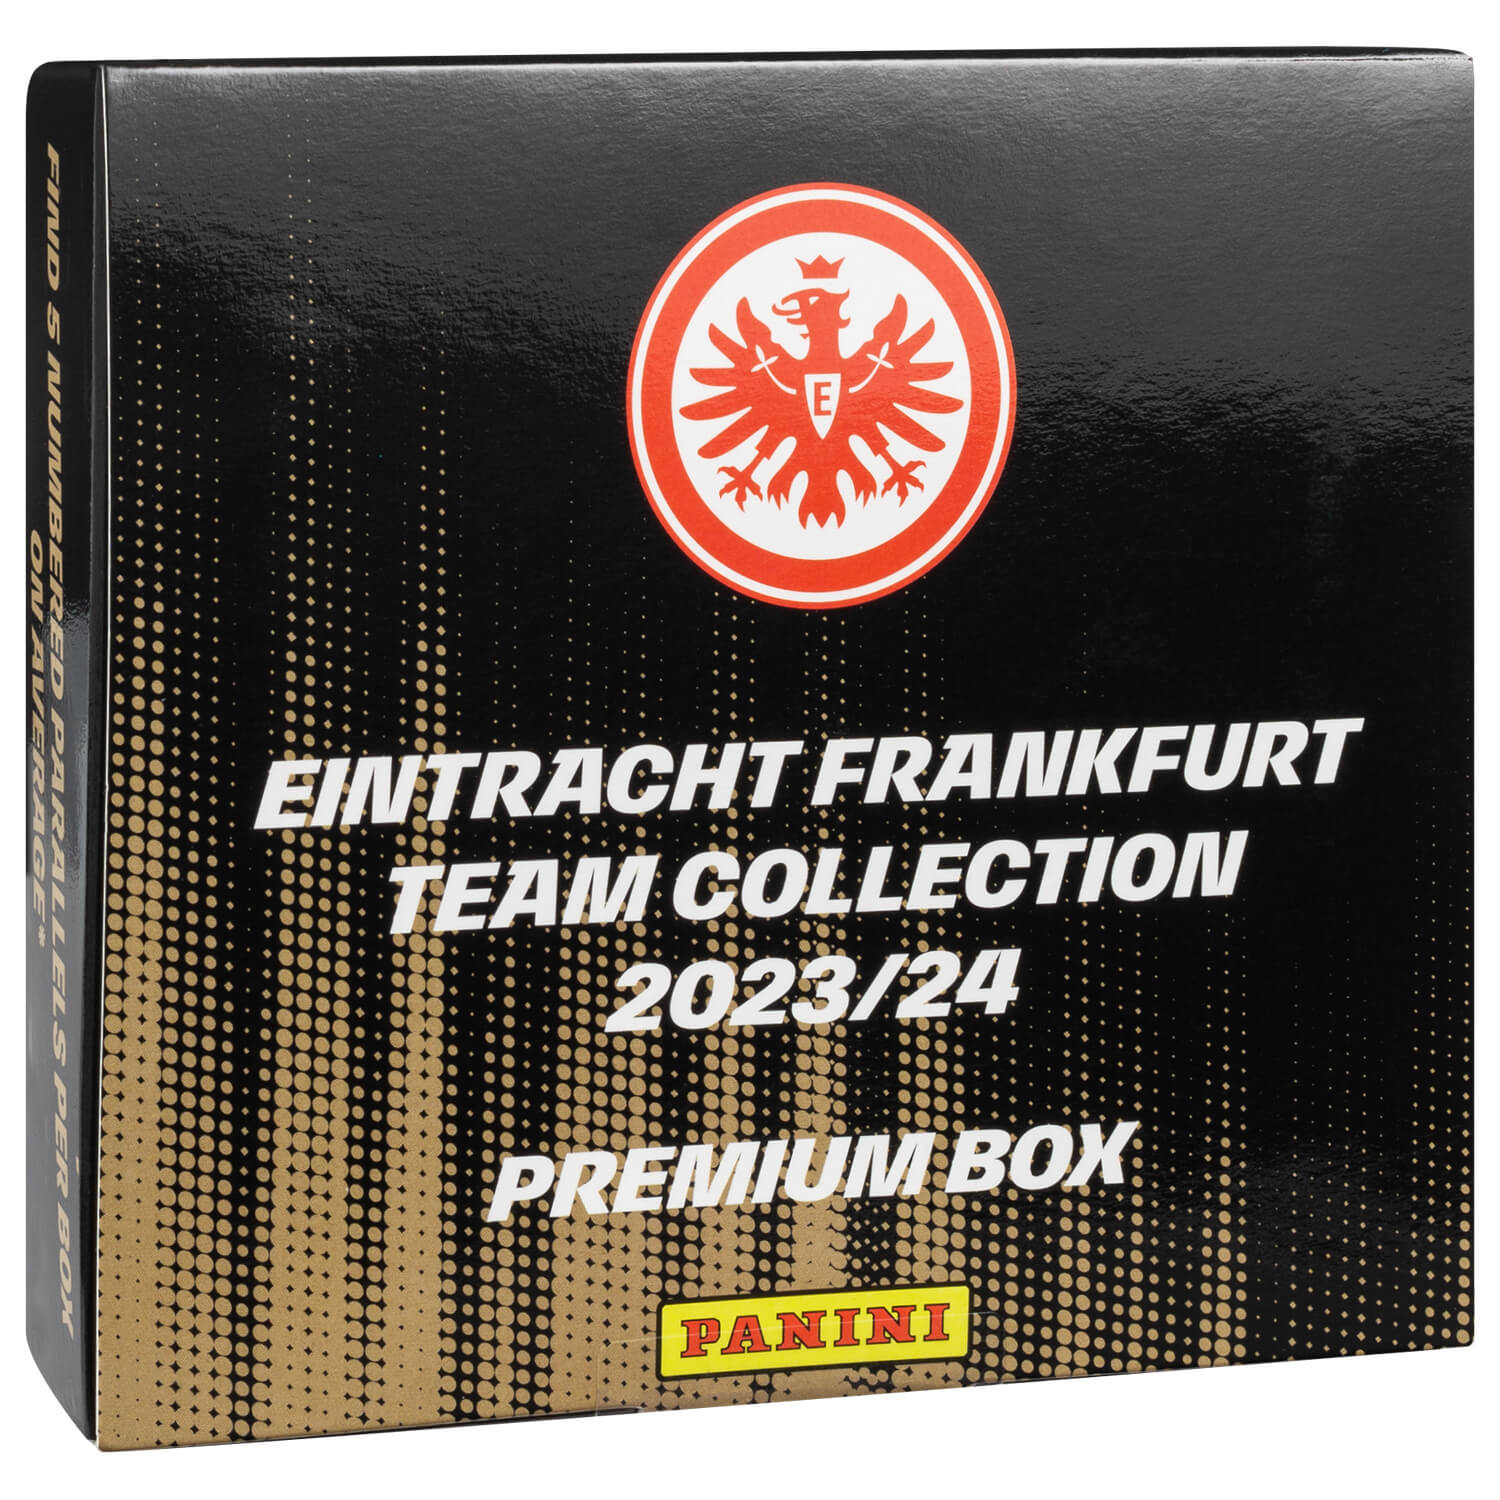 Bild 2: Team Collection 23/24 Premium Box